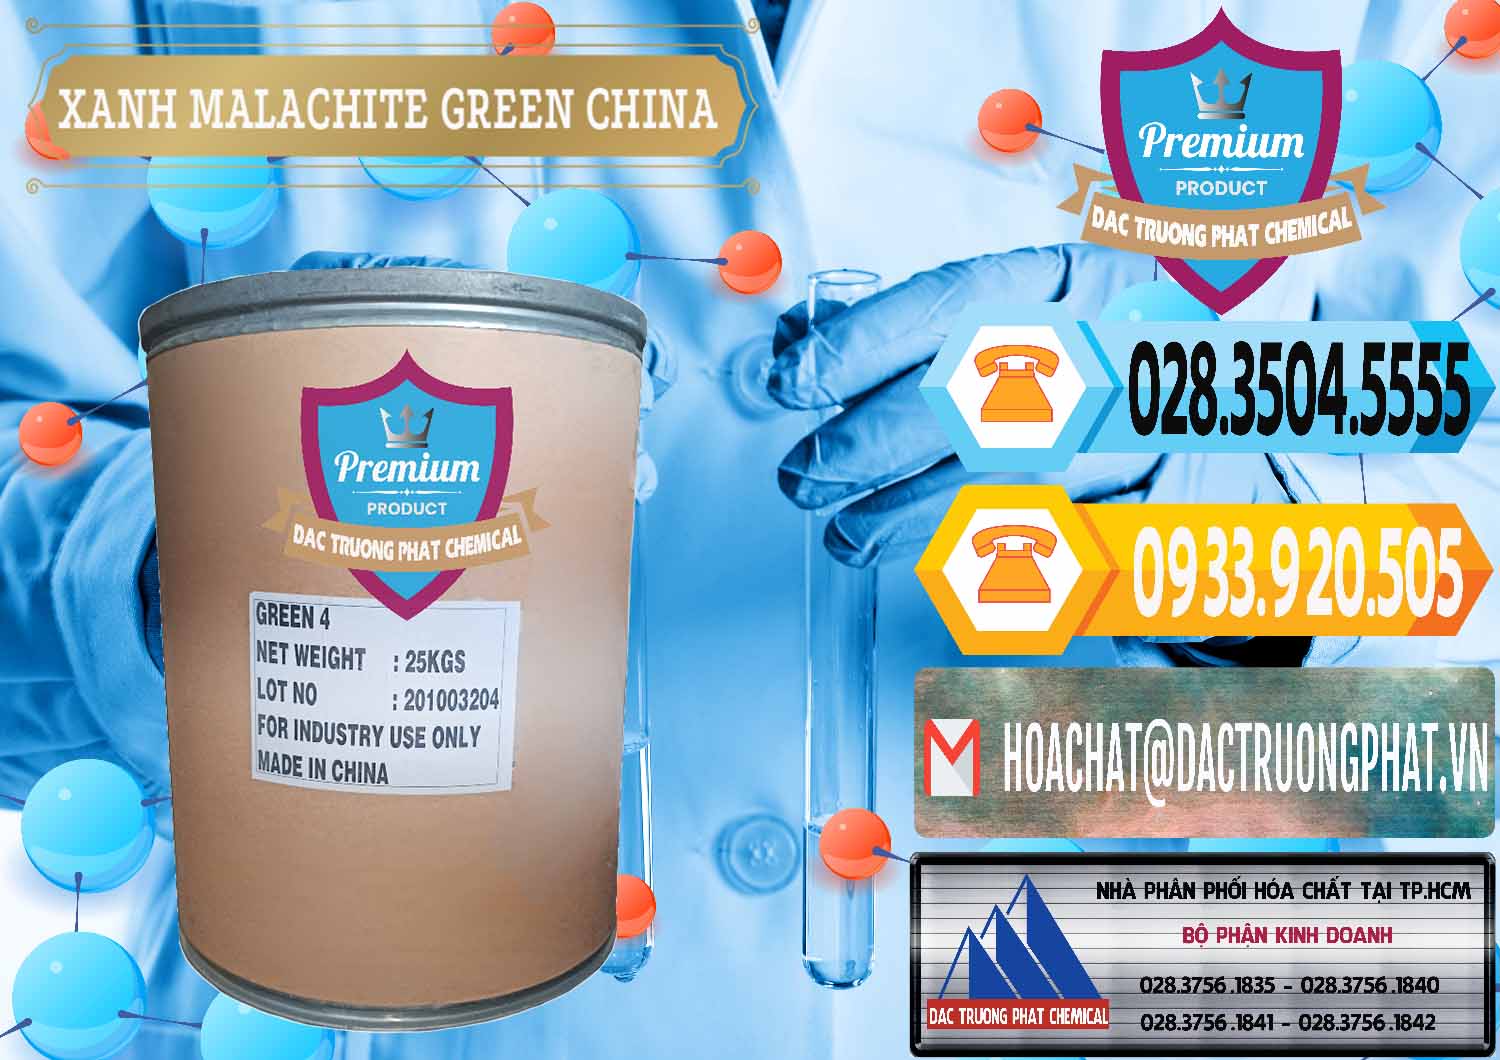 Cty chuyên kinh doanh & bán Xanh Malachite Green Trung Quốc China - 0325 - Cty bán & phân phối hóa chất tại TP.HCM - hoachattayrua.net